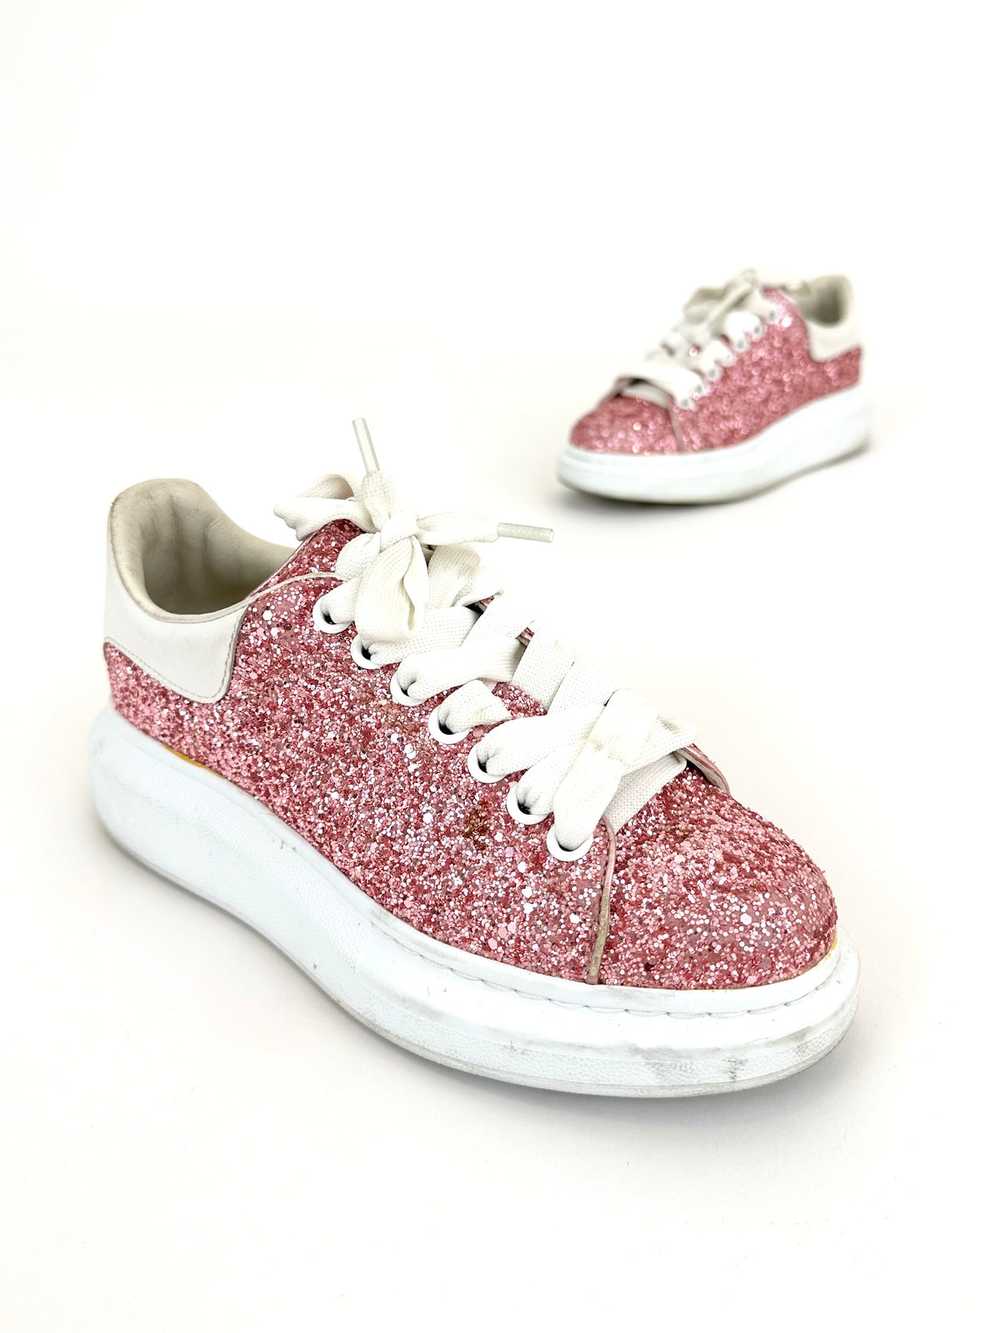 Alexander McQueen Glitter Platform Sneakers - image 3